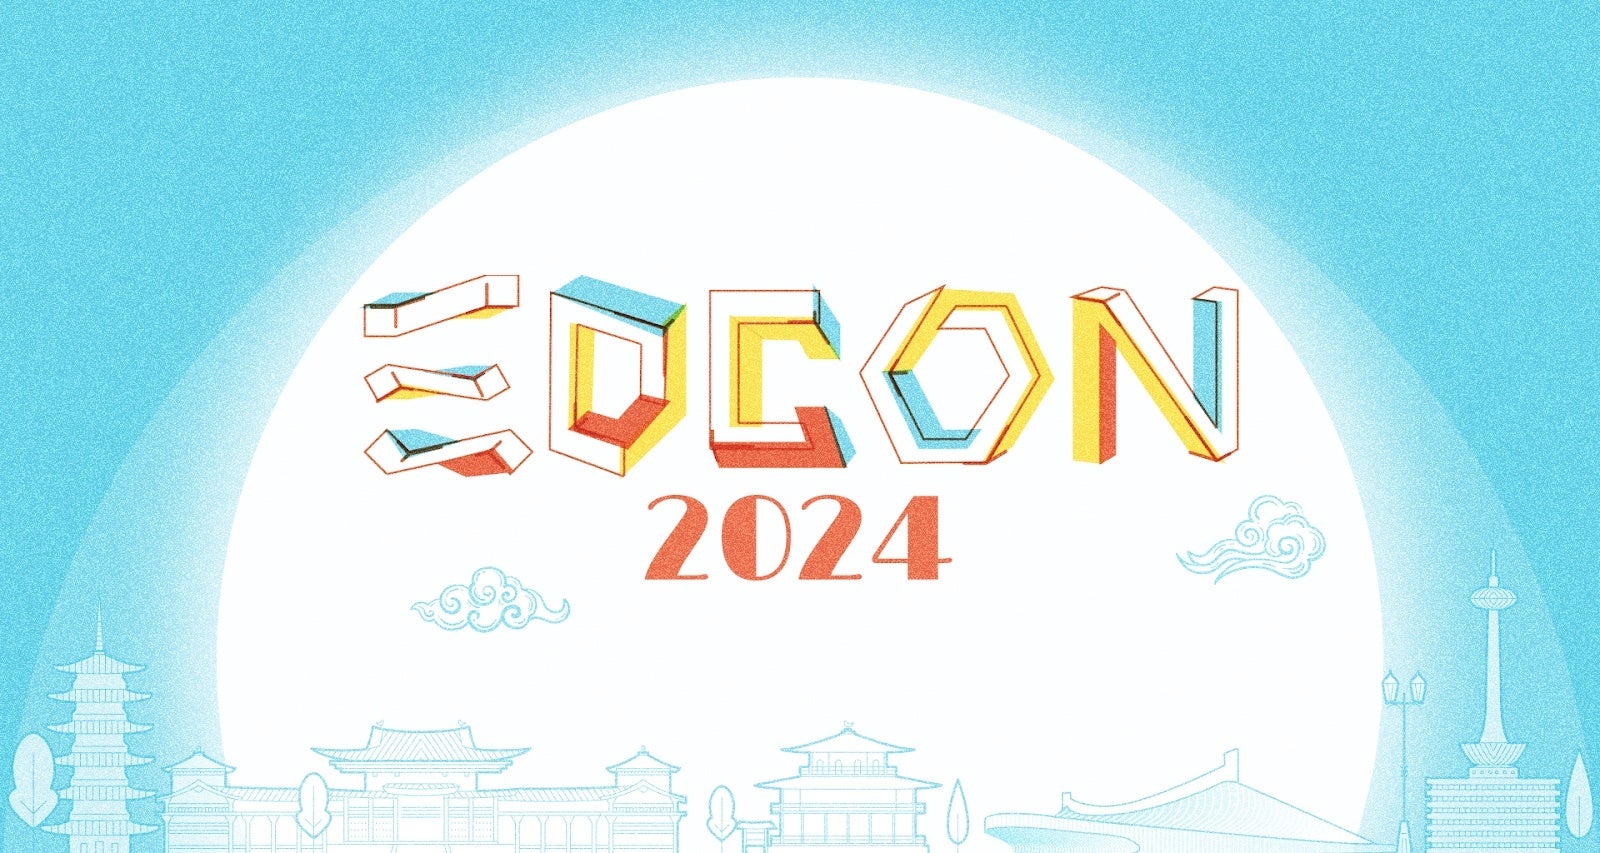 渋谷web3ハブ「Centrum」、世界最大規模のイーサリアムコミュニティ開発者カンファレンス「EDCON2024」とパー...